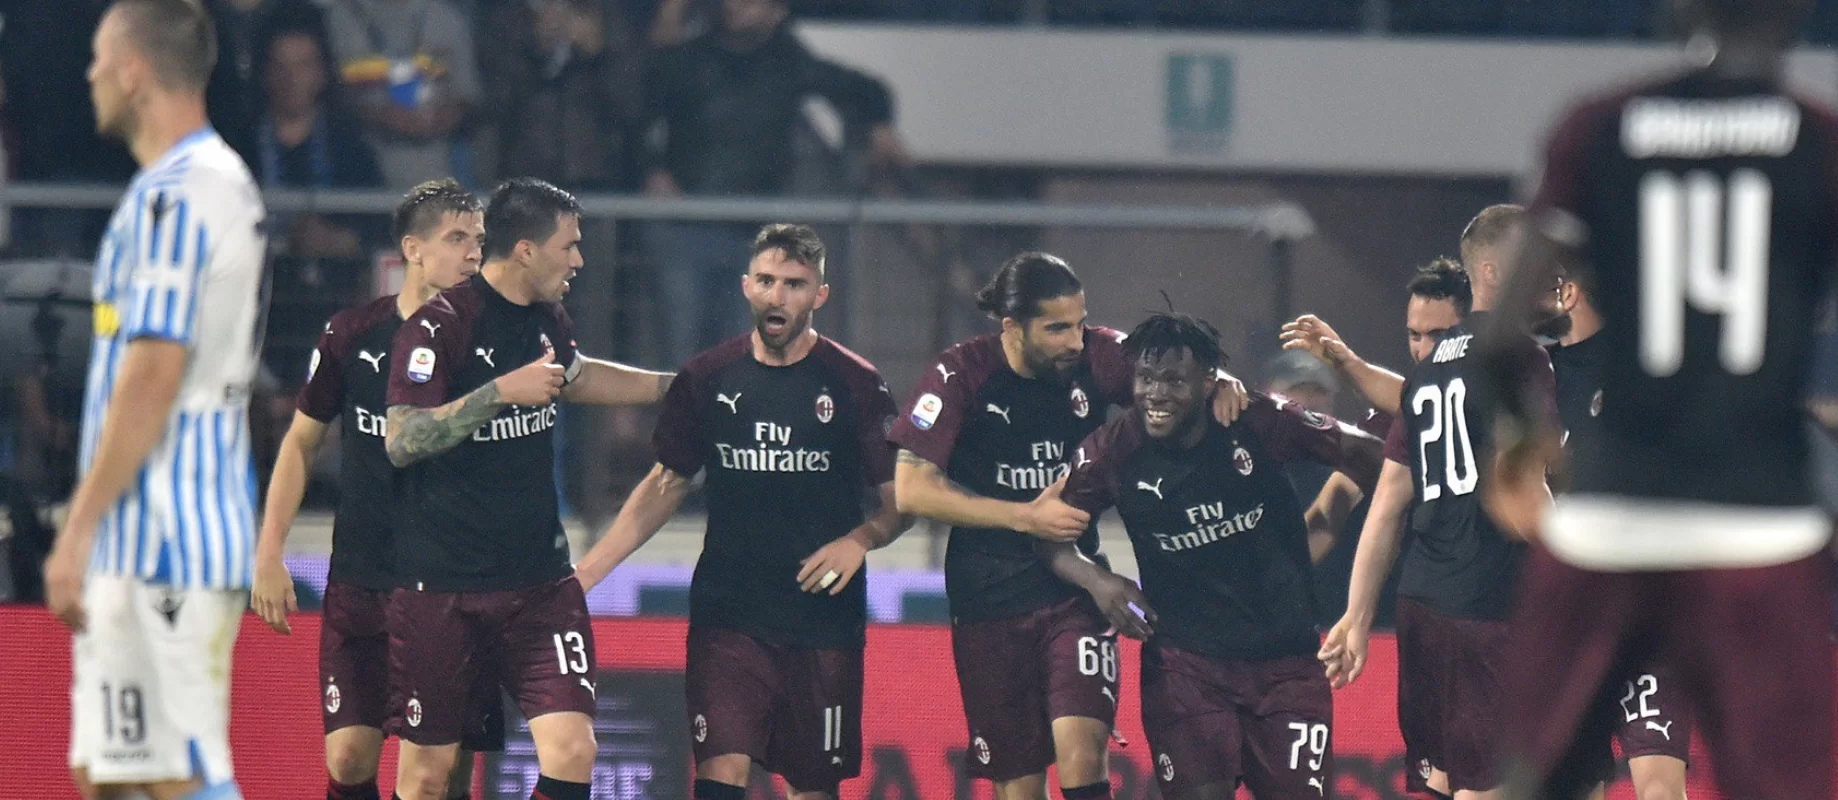 Milan sempre bene all’ultima di campionato: in 10 stagioni, otto vittorie consecutive